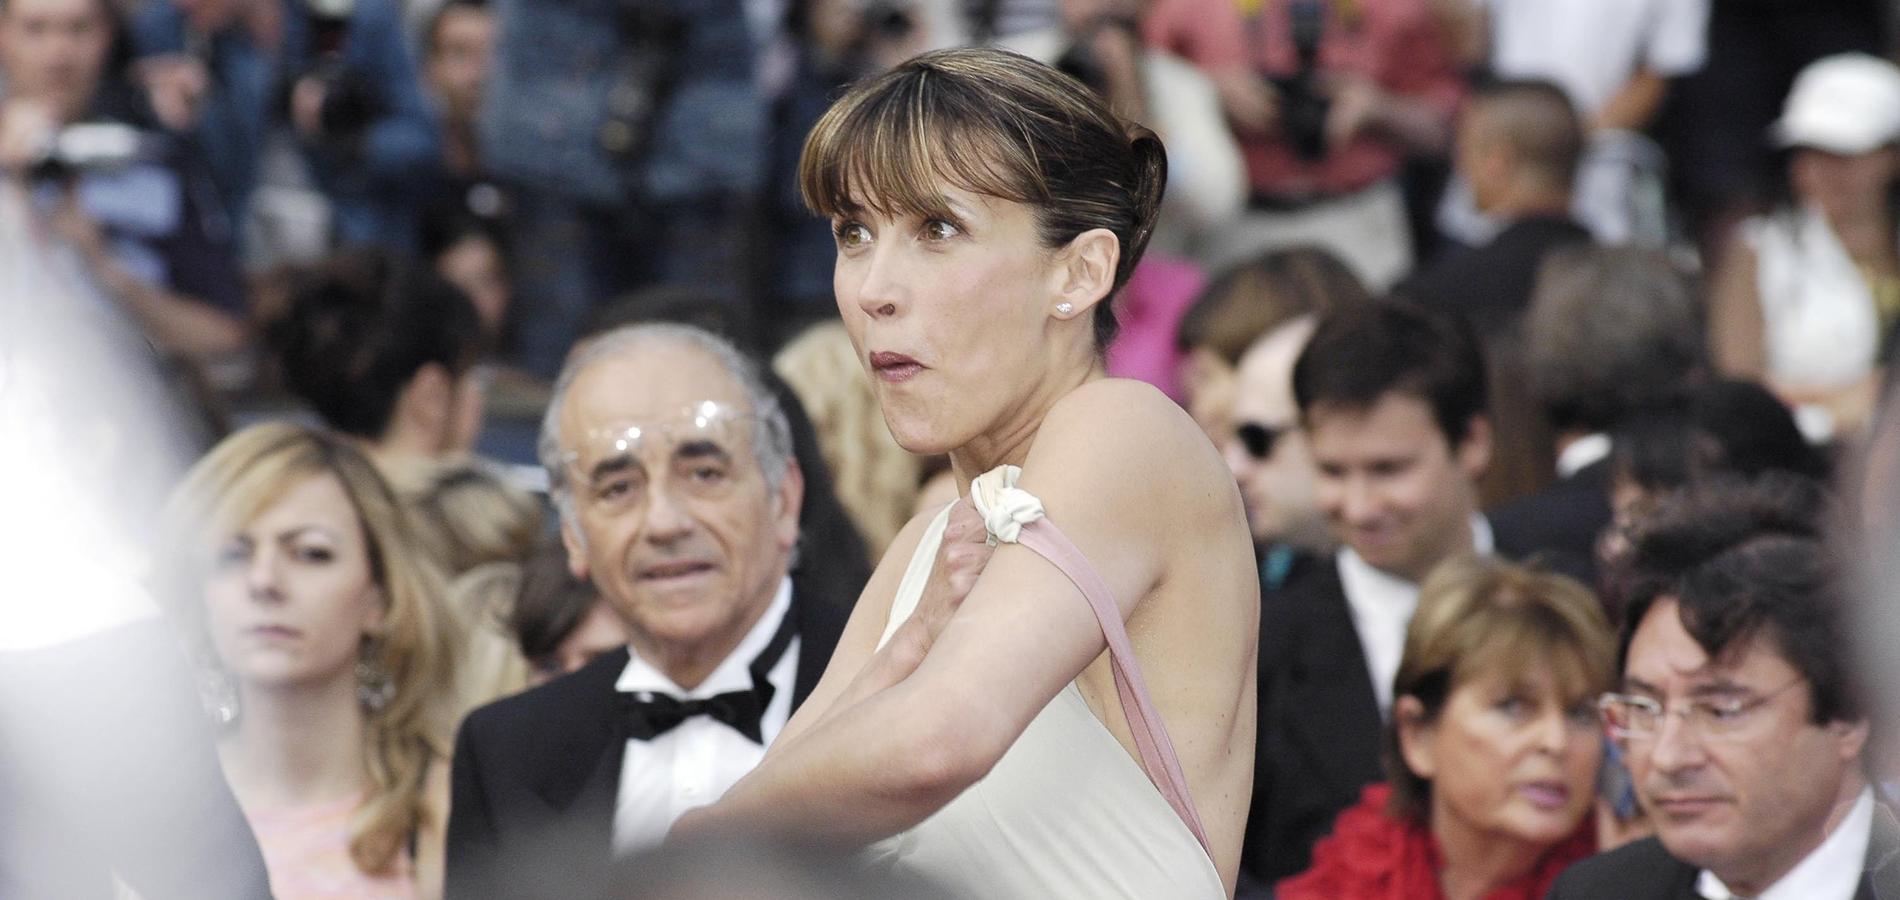 Sophie Marceau seins nus à Cannes : "C'était un accident"